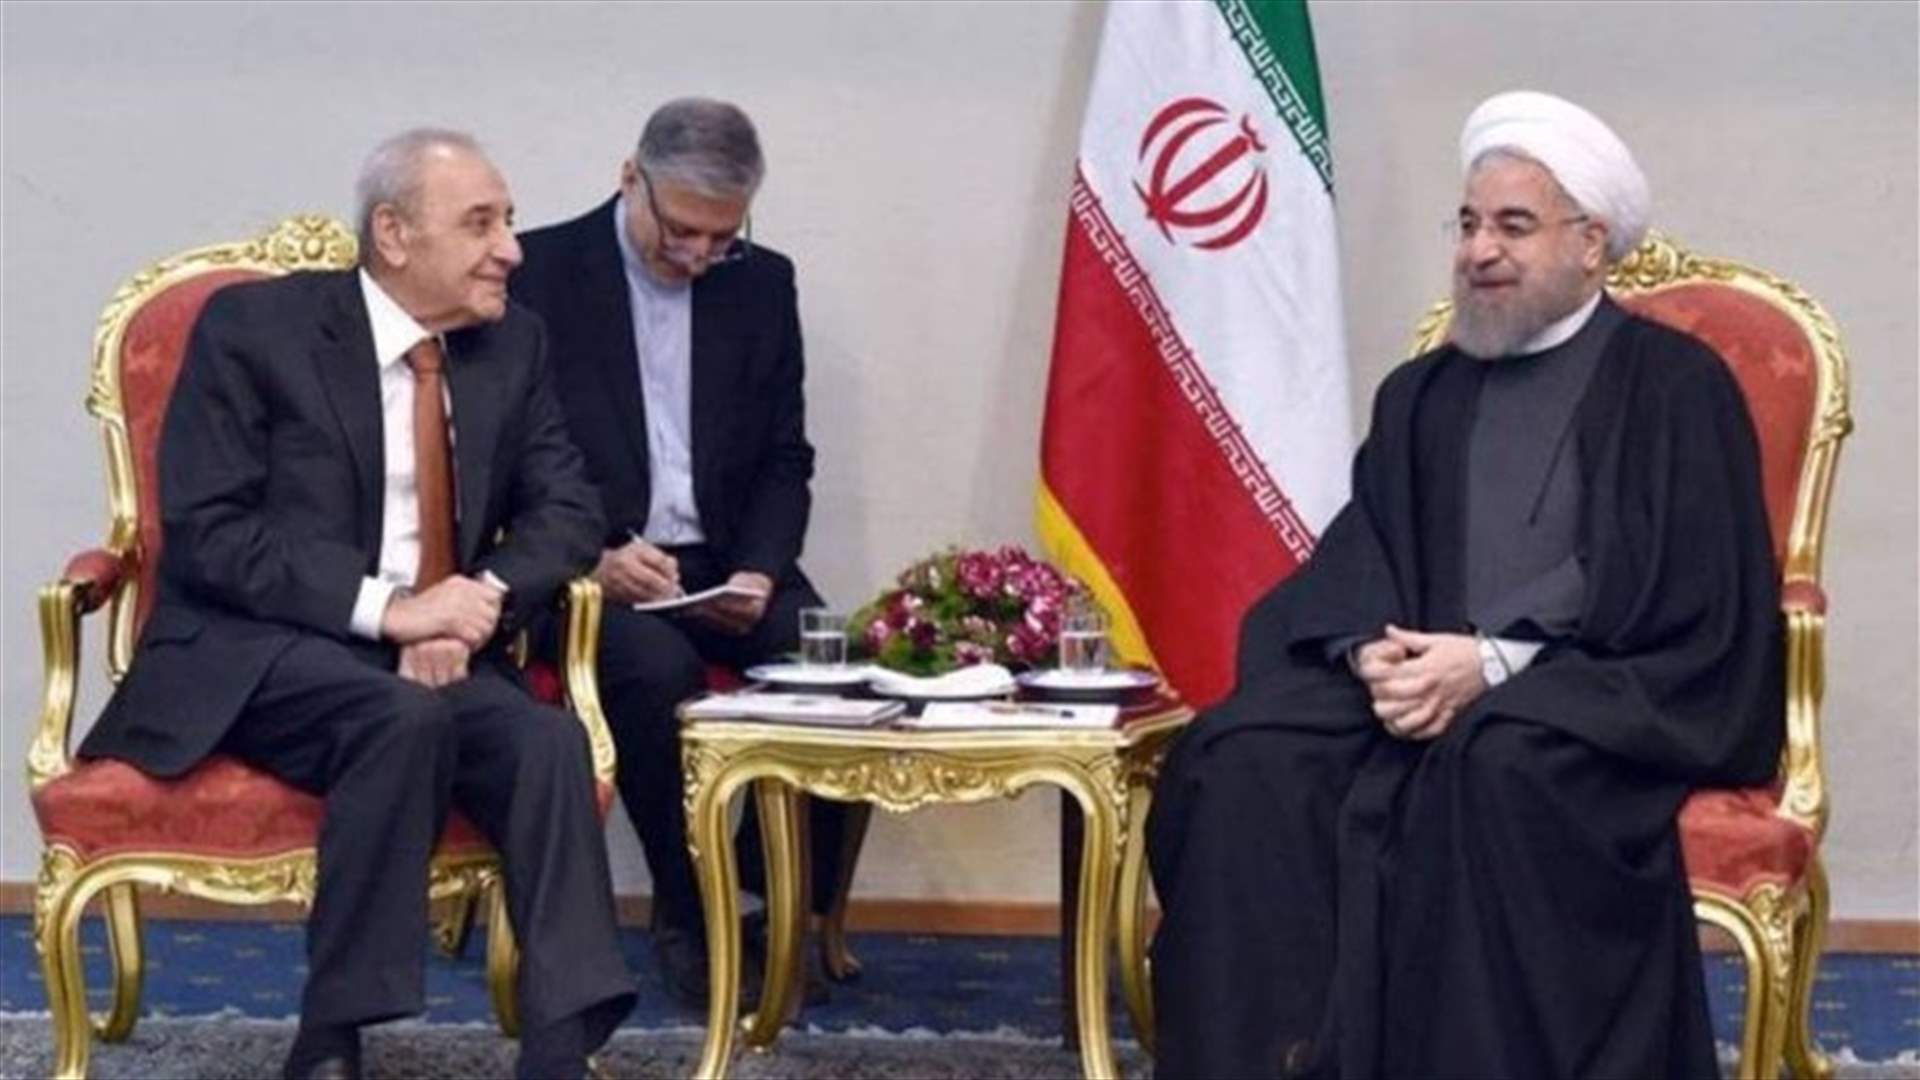 Speaker Berri meets with Rouhani, Larijani in Tehran